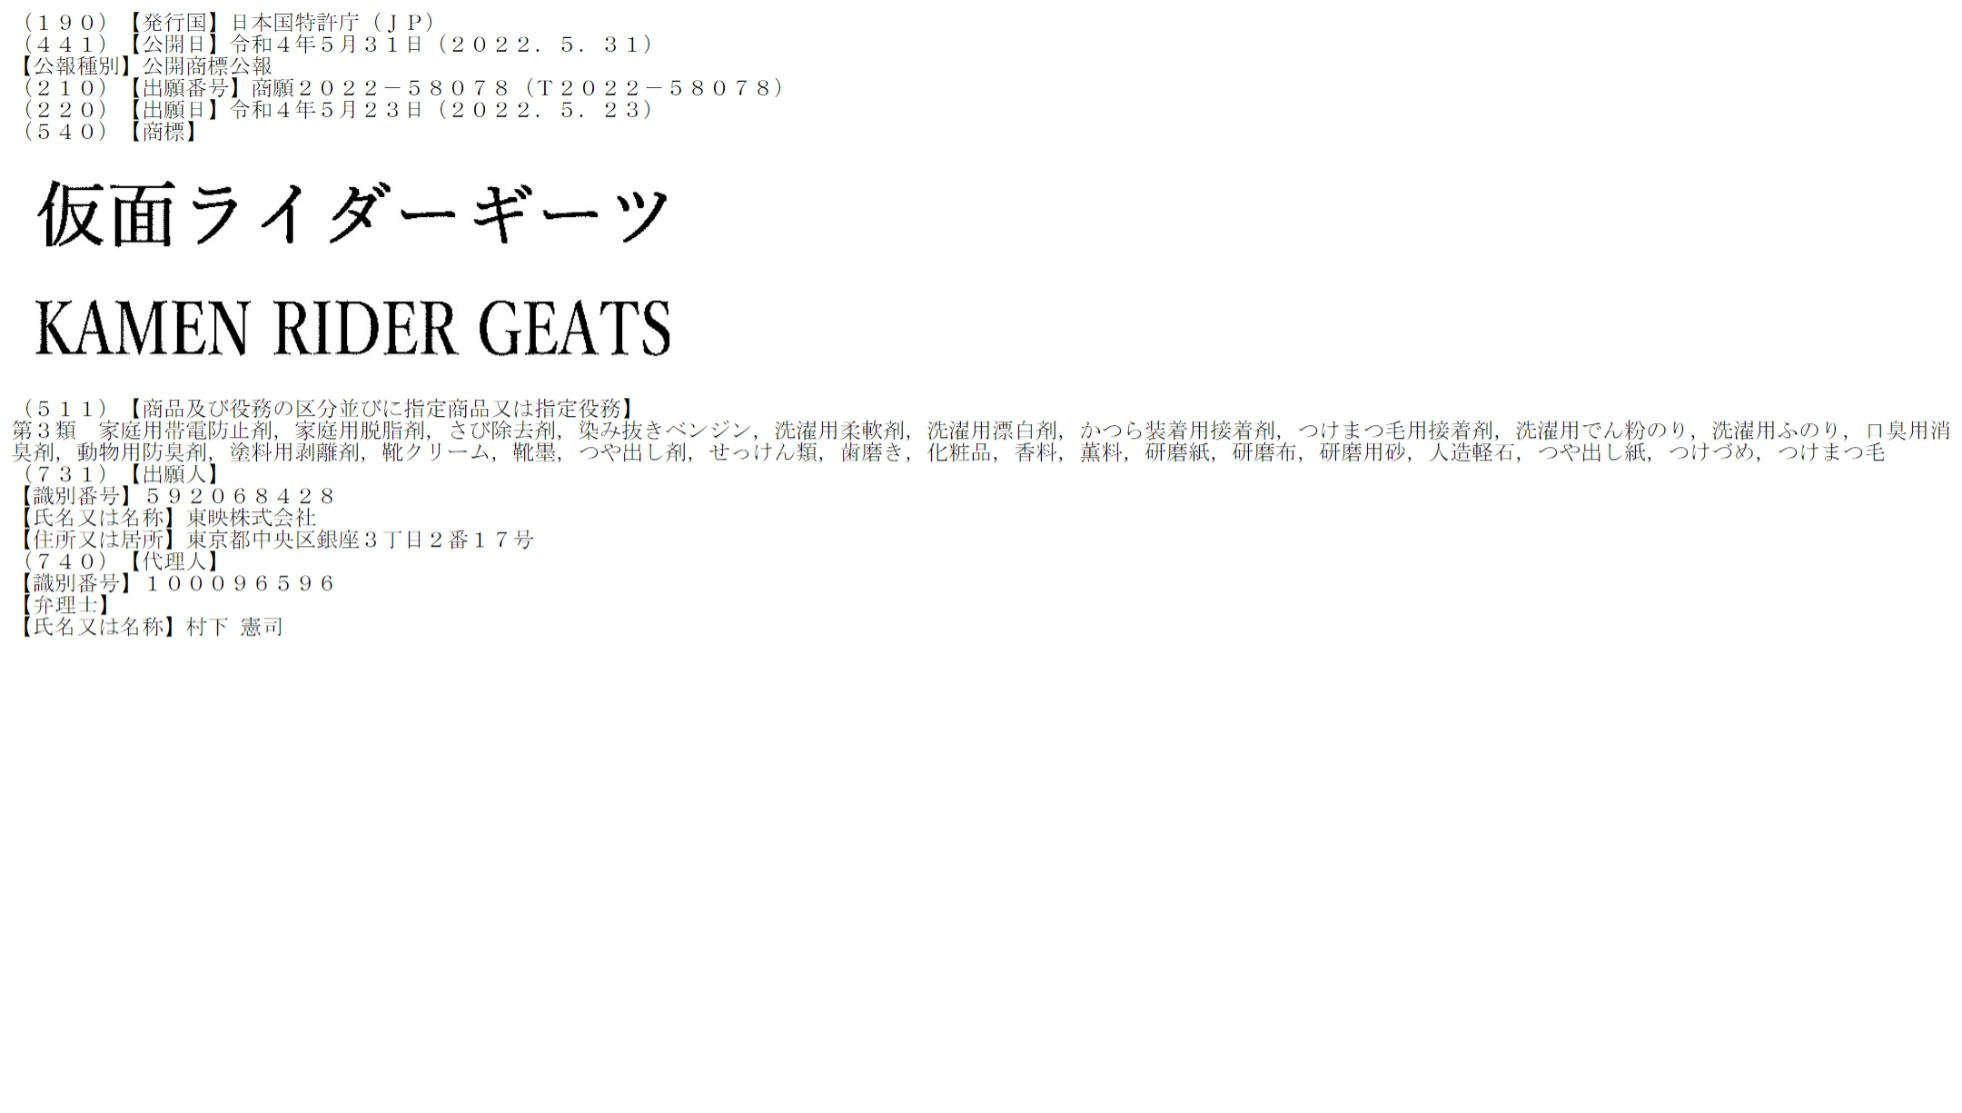 Kamen-Rider-Geats-Trademark.jpg